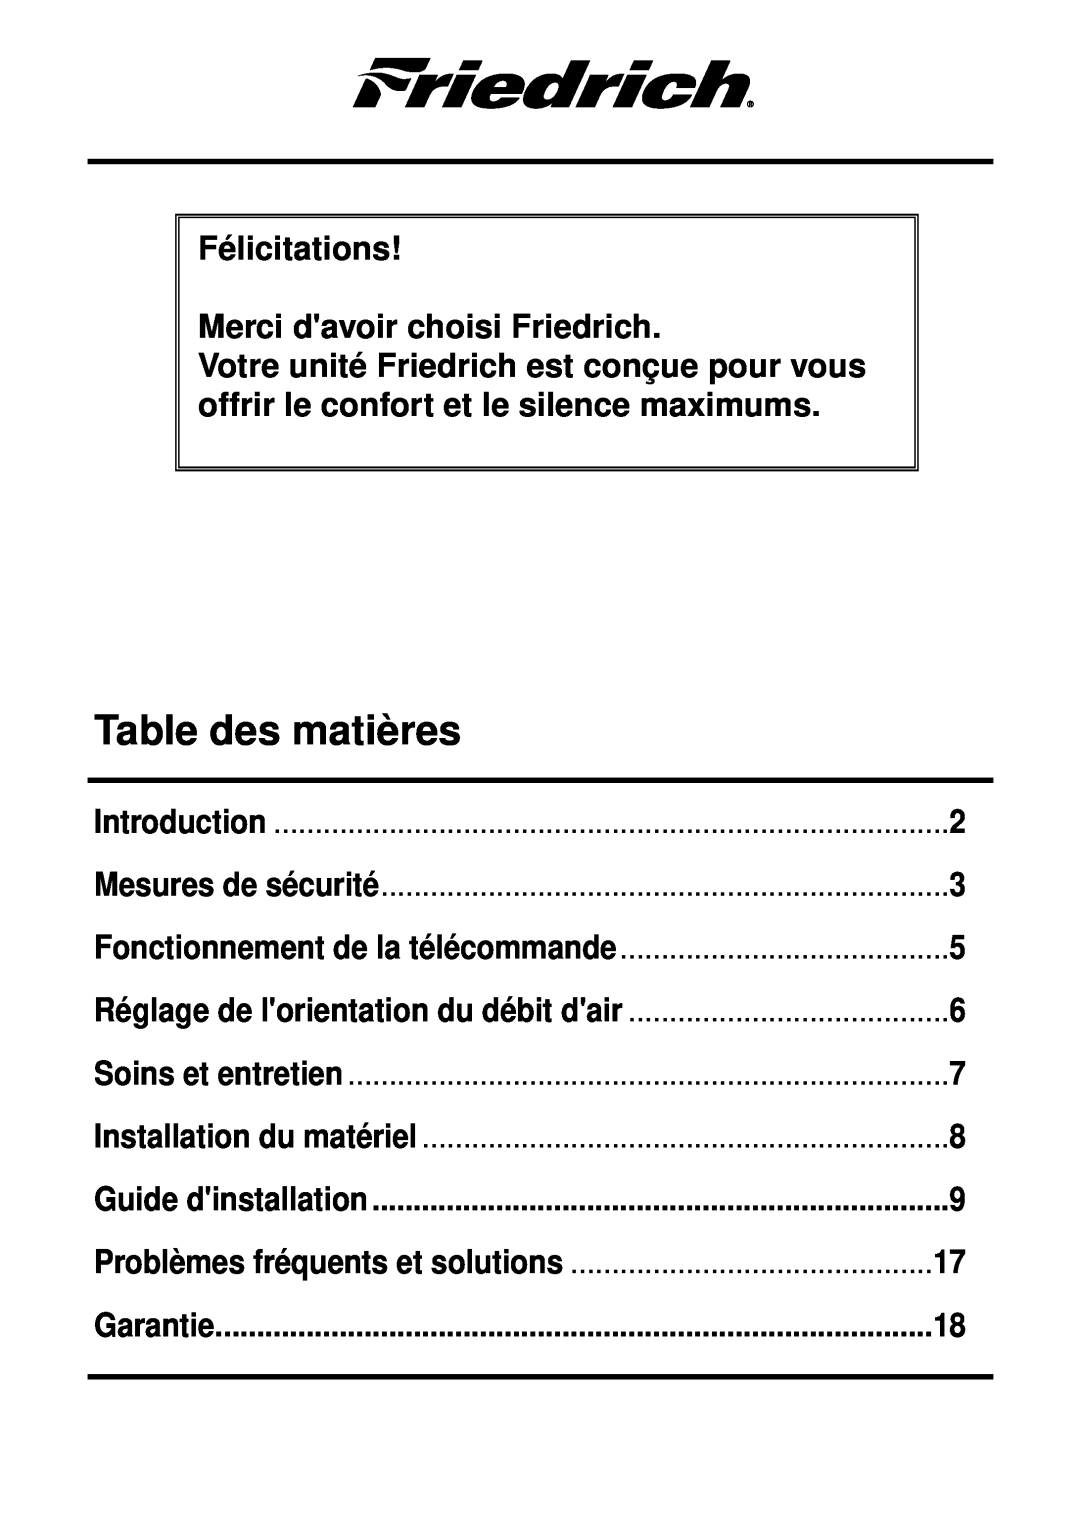 Friedrich CP12, CP10 Table des matières, Félicitations Merci davoir choisi Friedrich, Introduction, Mesures de sécurité 